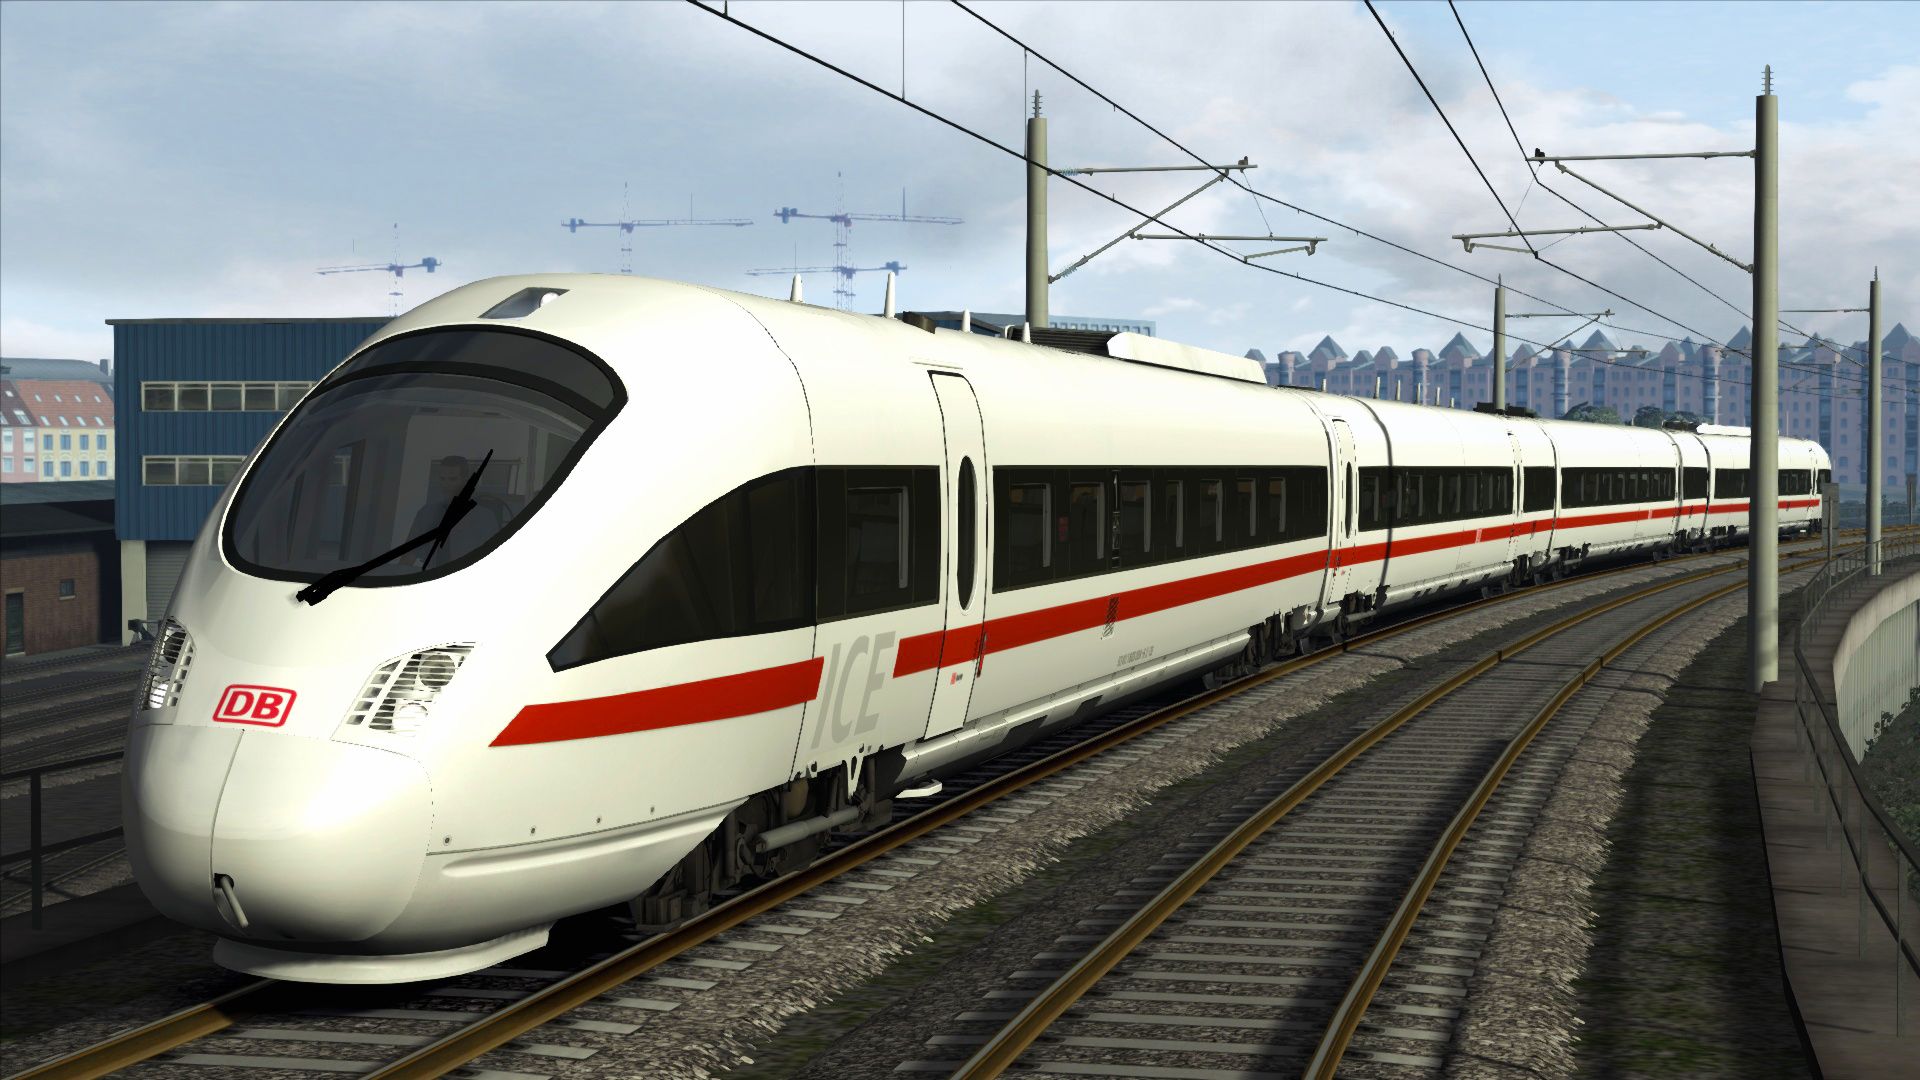 Train Simulator - DB BR 605 ICE TD Add-On DLC Steam CD Key 1.34$